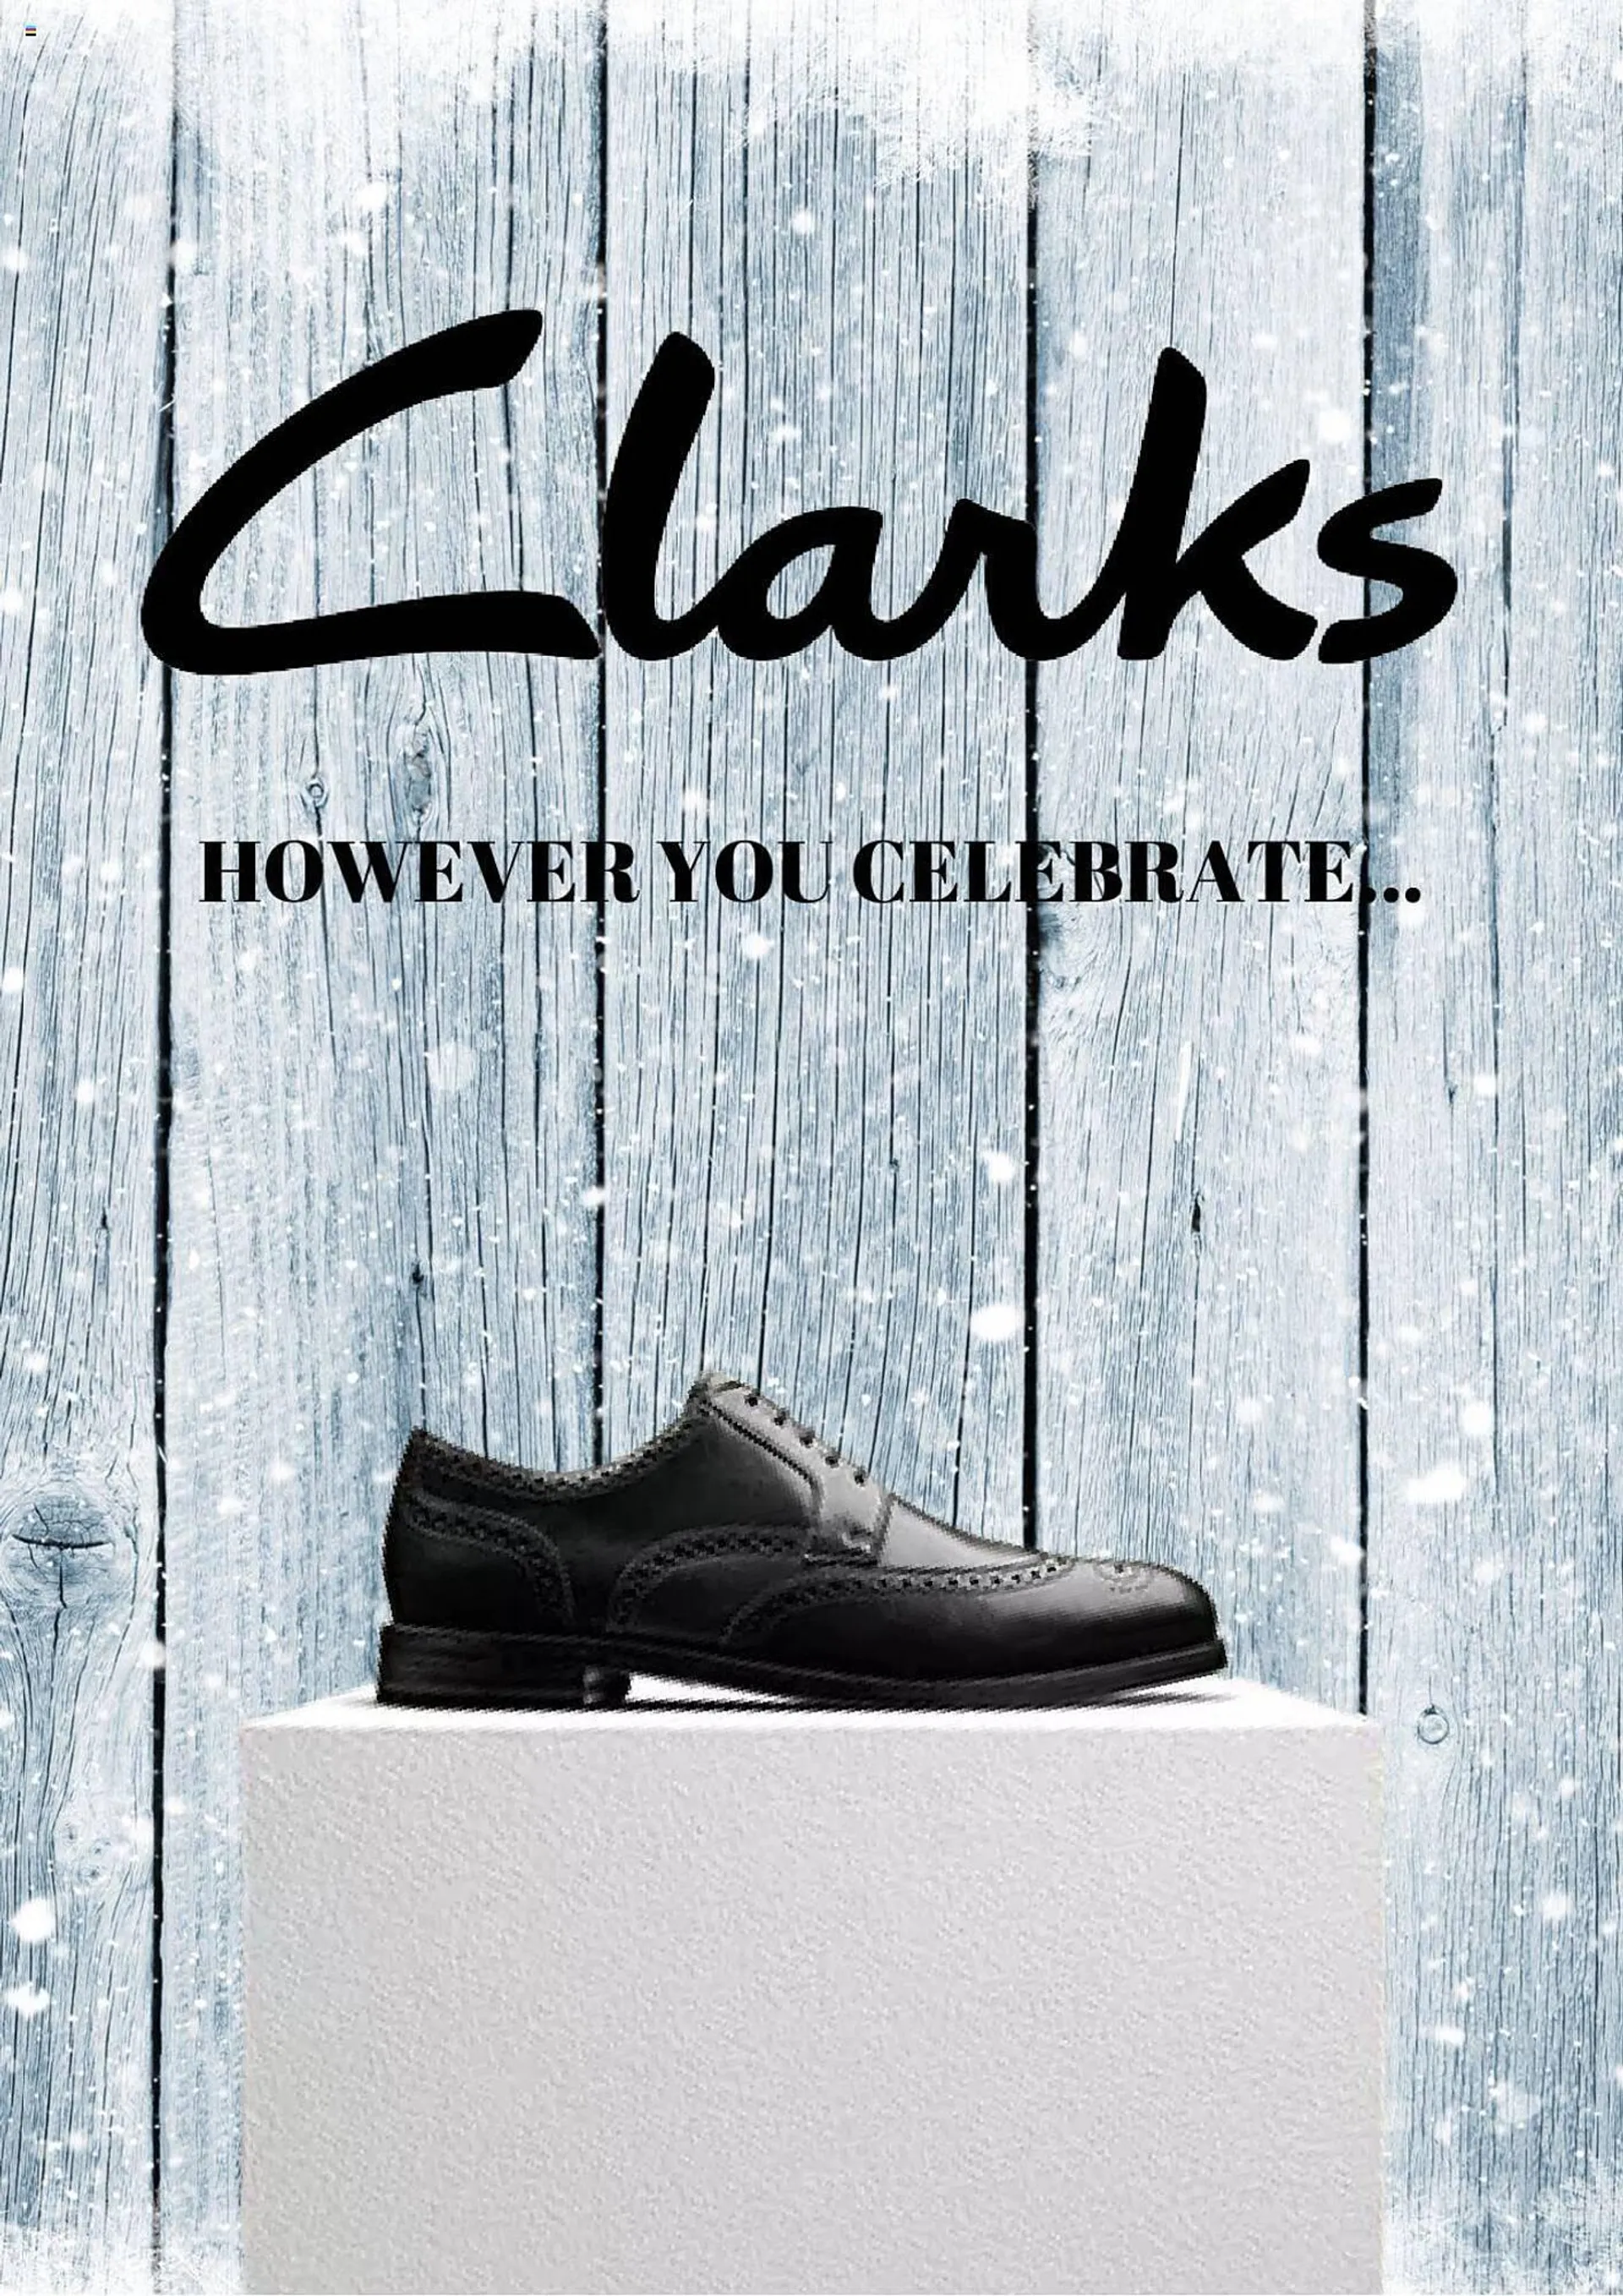 Clarks leaflet - 1